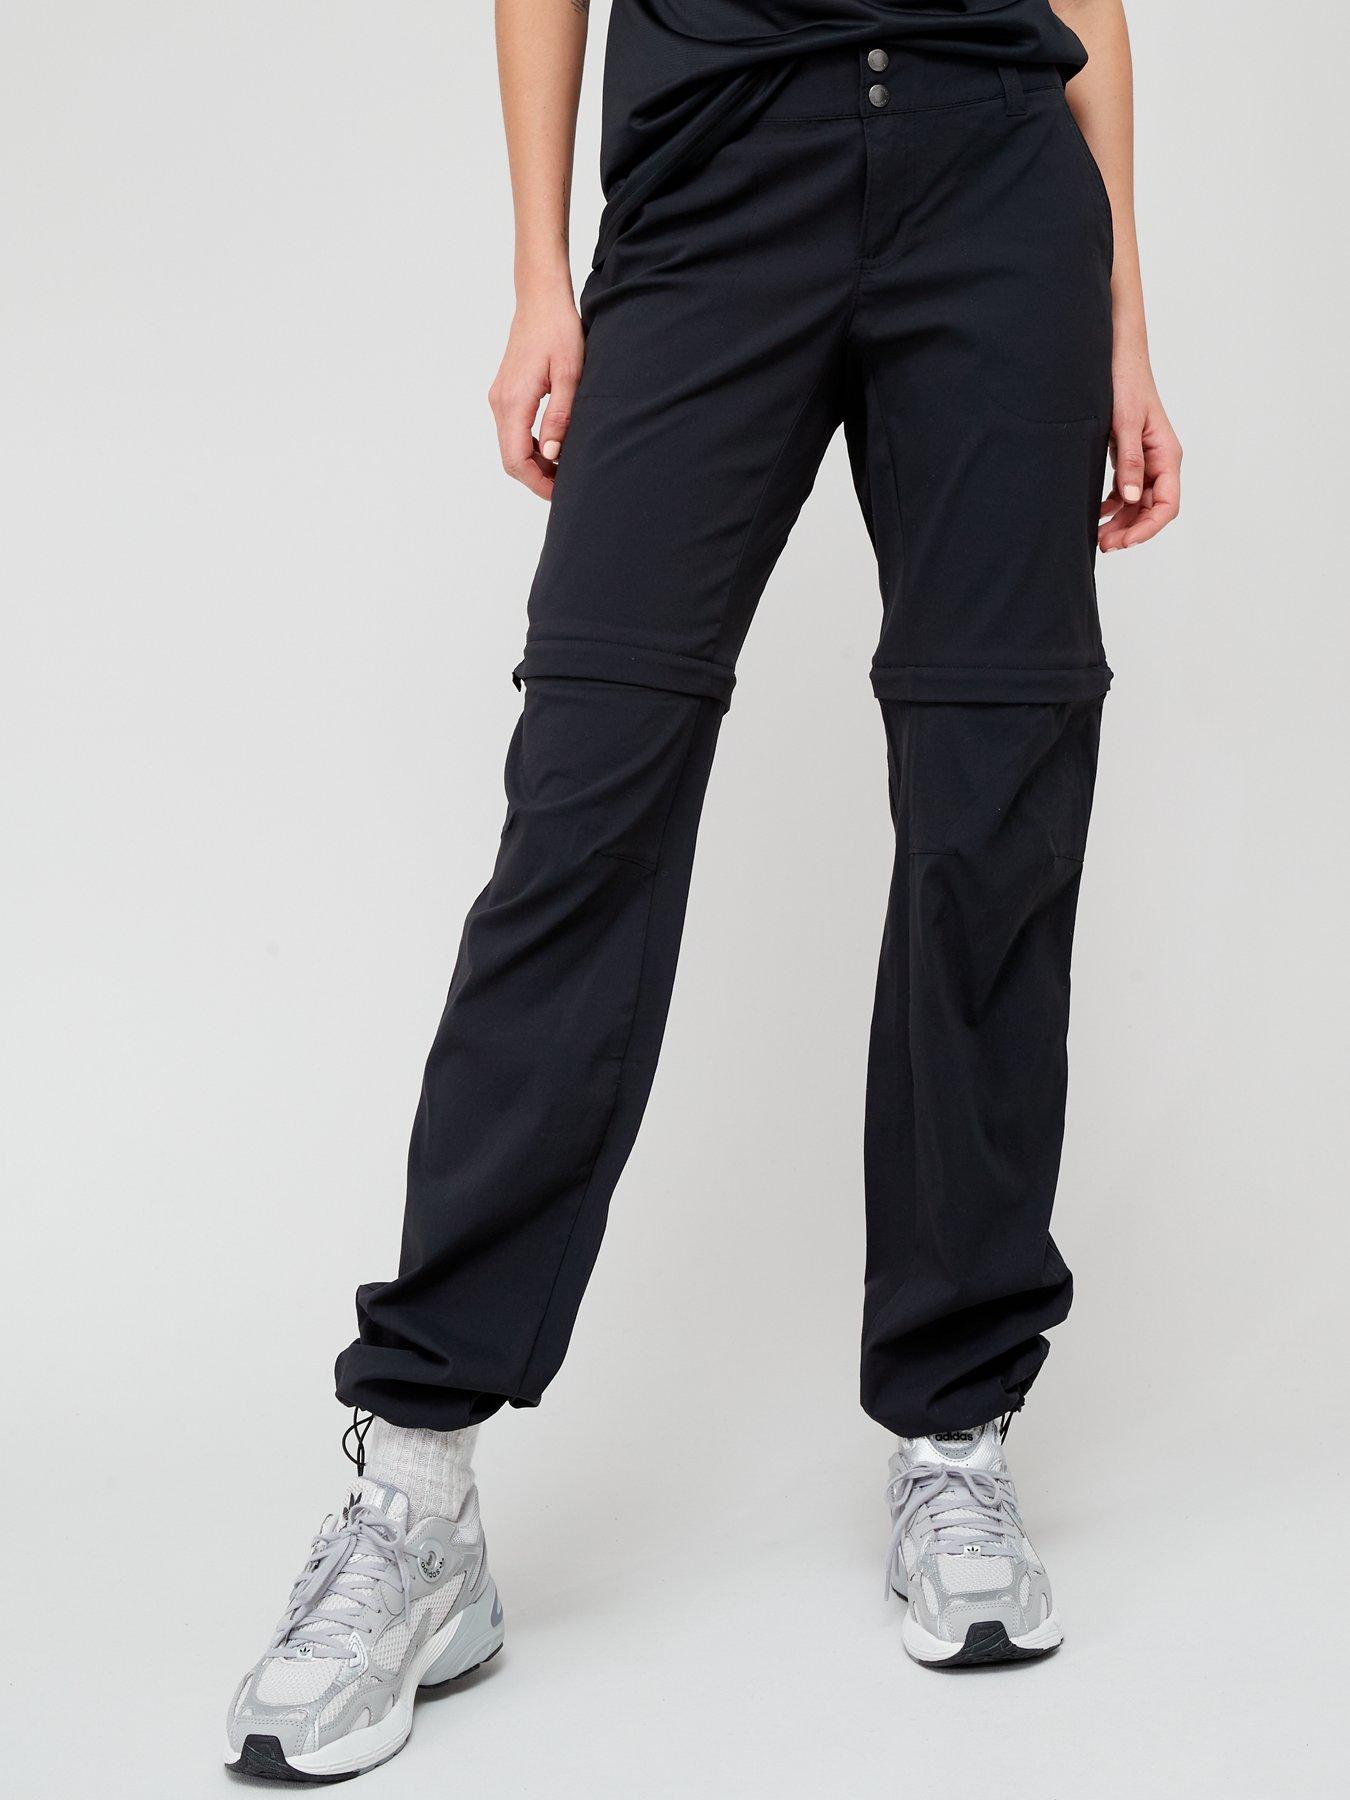 Sleek Full Length Waterproof Ski Pants - Black